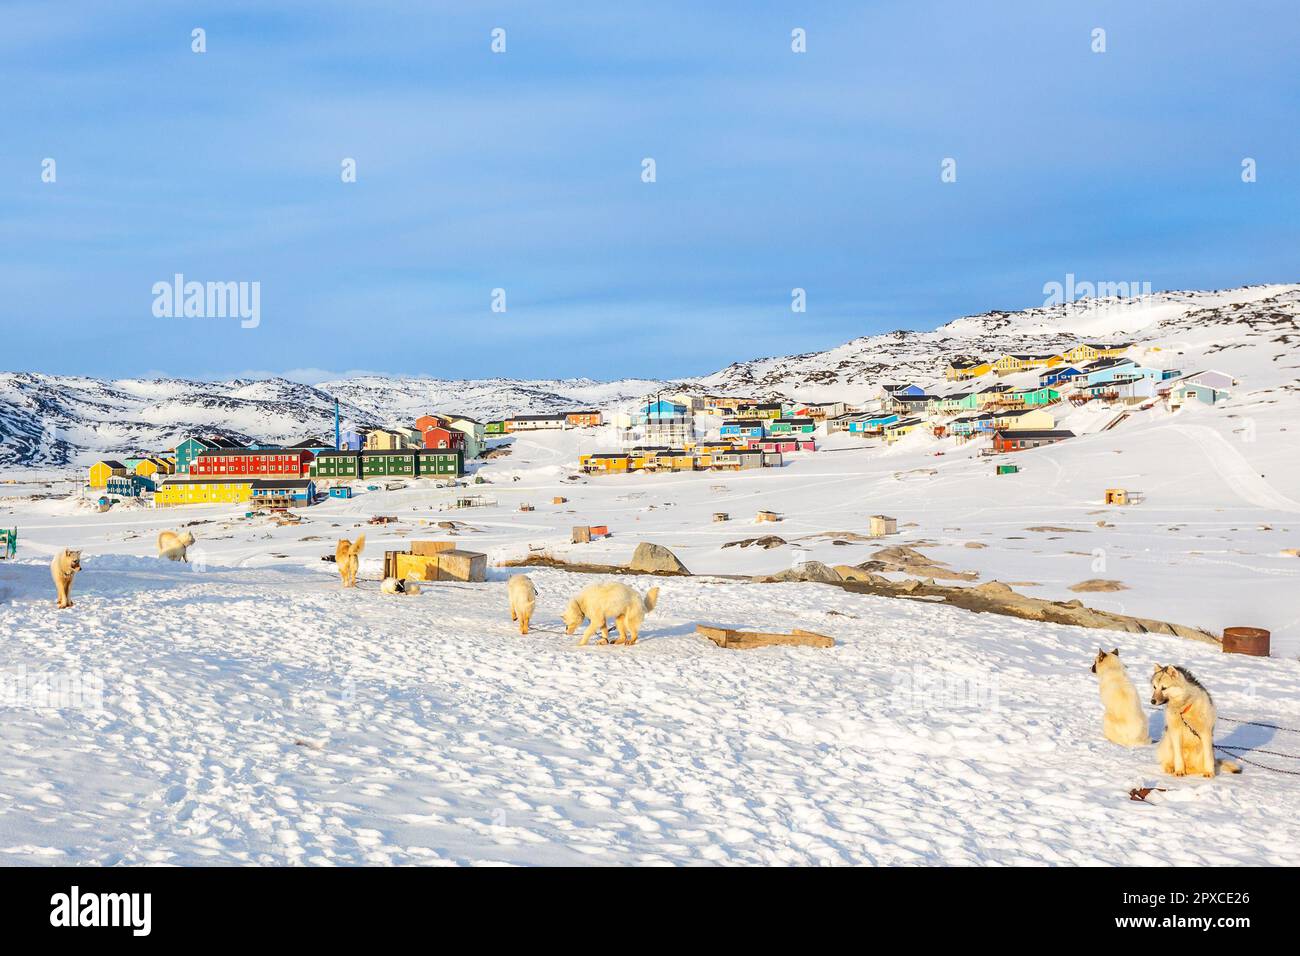 Chiens de traîneau et maisons inuites sur les collines rocheuses couvertes de neige, Ilulissat, municipalité d'Avannaata, Groenland Banque D'Images